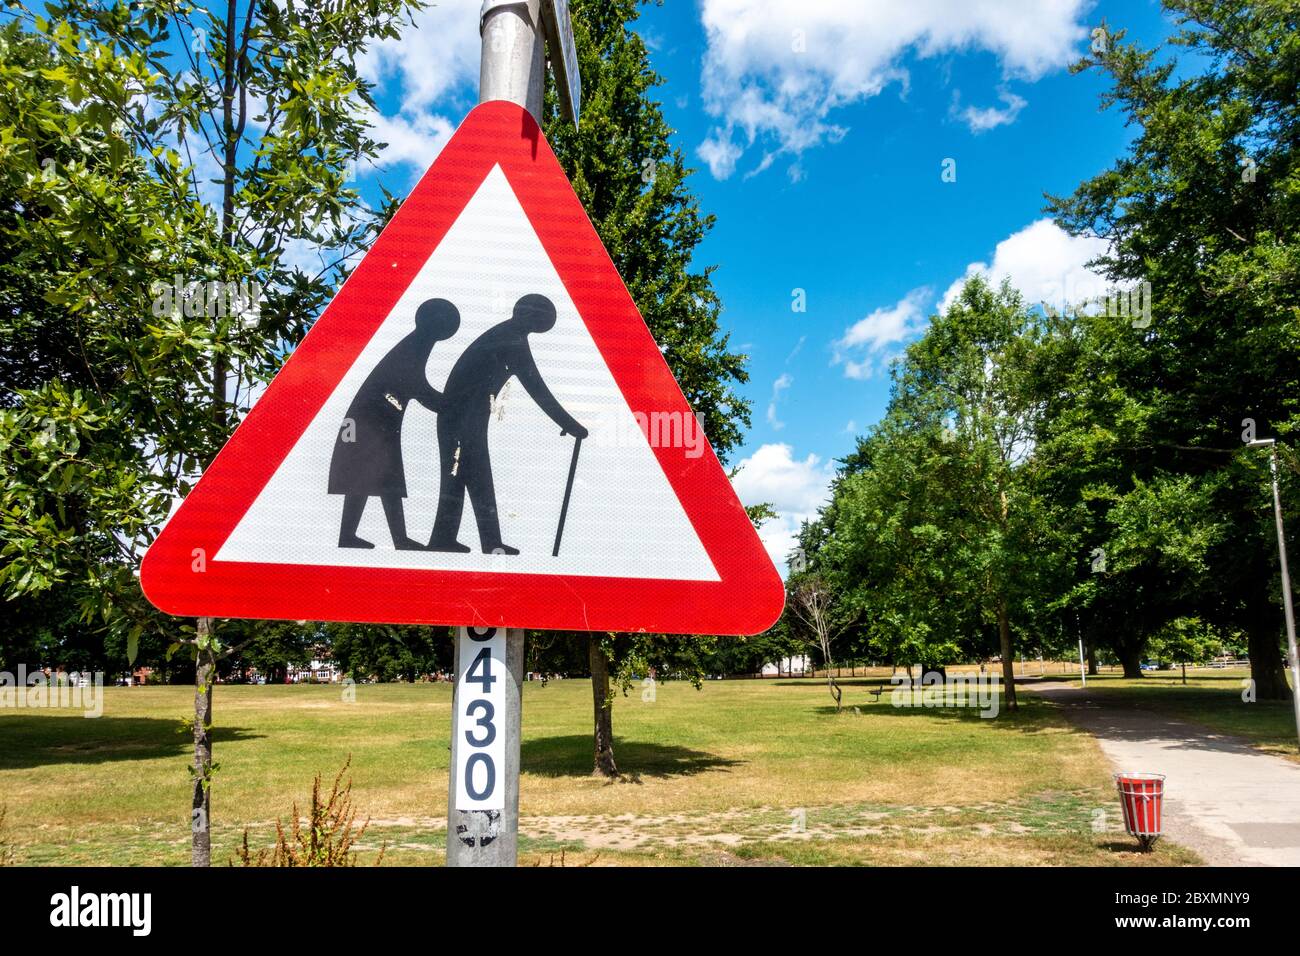 Un signo triangular rojo en un parque advierte a las personas de peatones que pueden ser lentos o inestables debido a la vejez o a la falta de firmeza. Foto de stock